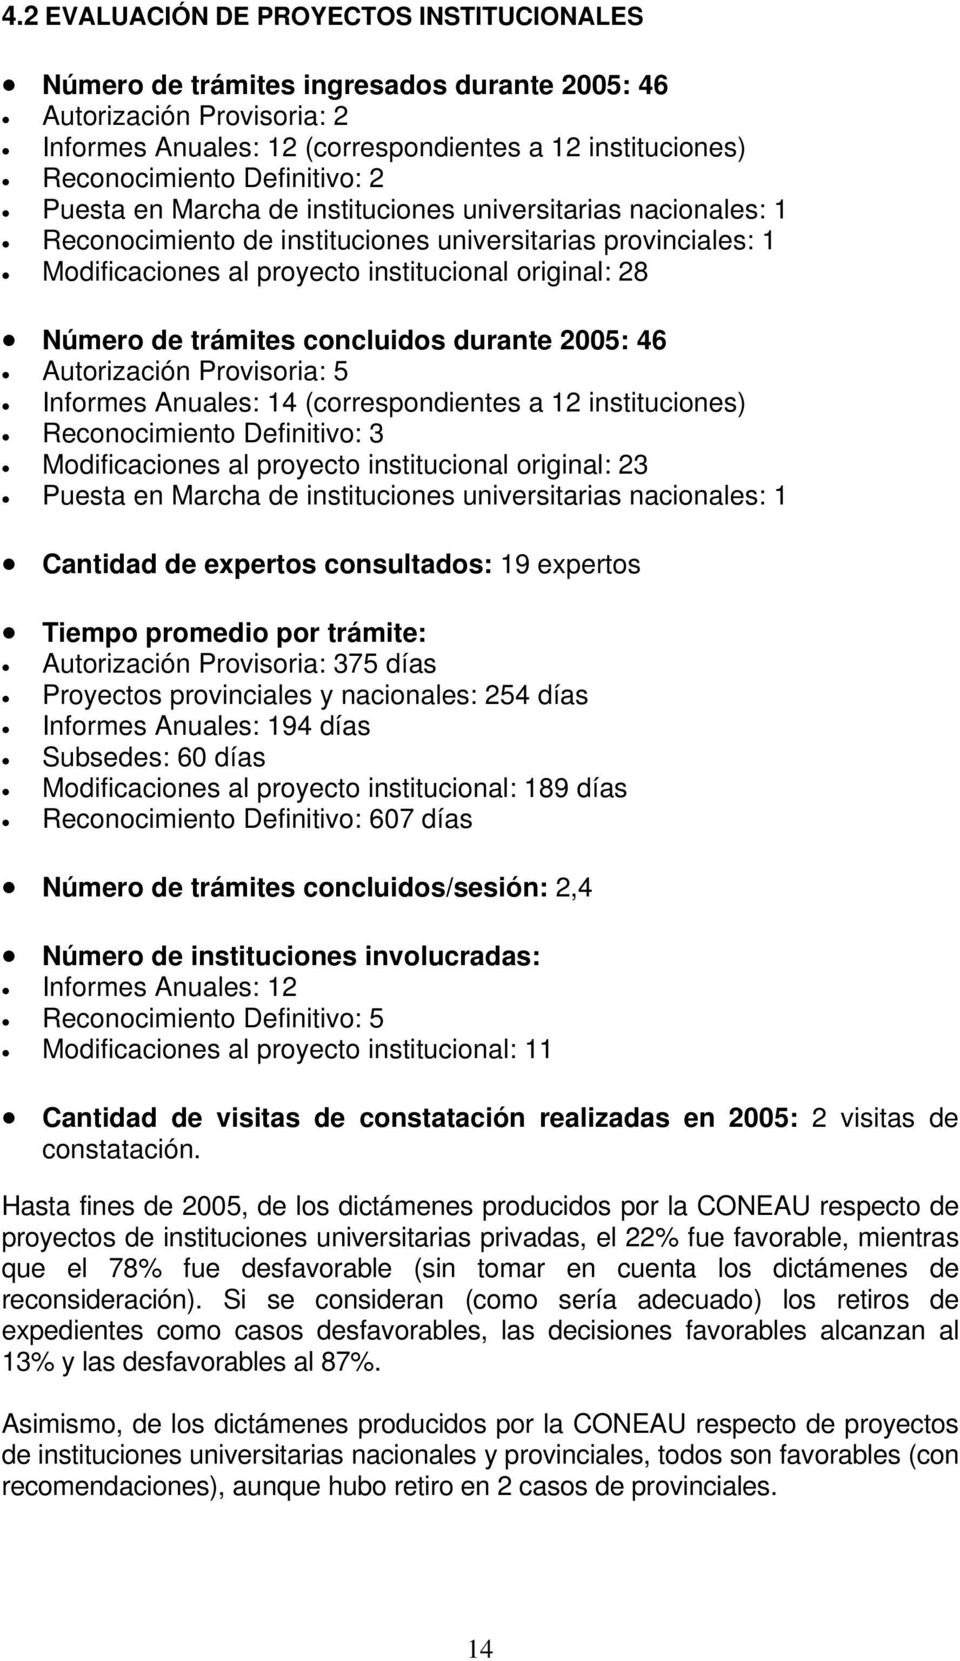 Número de trámites concluidos durante 2005: 46 Autorización Provisoria: 5 Informes Anuales: 14 (correspondientes a 12 instituciones) Reconocimiento Definitivo: 3 Modificaciones al proyecto